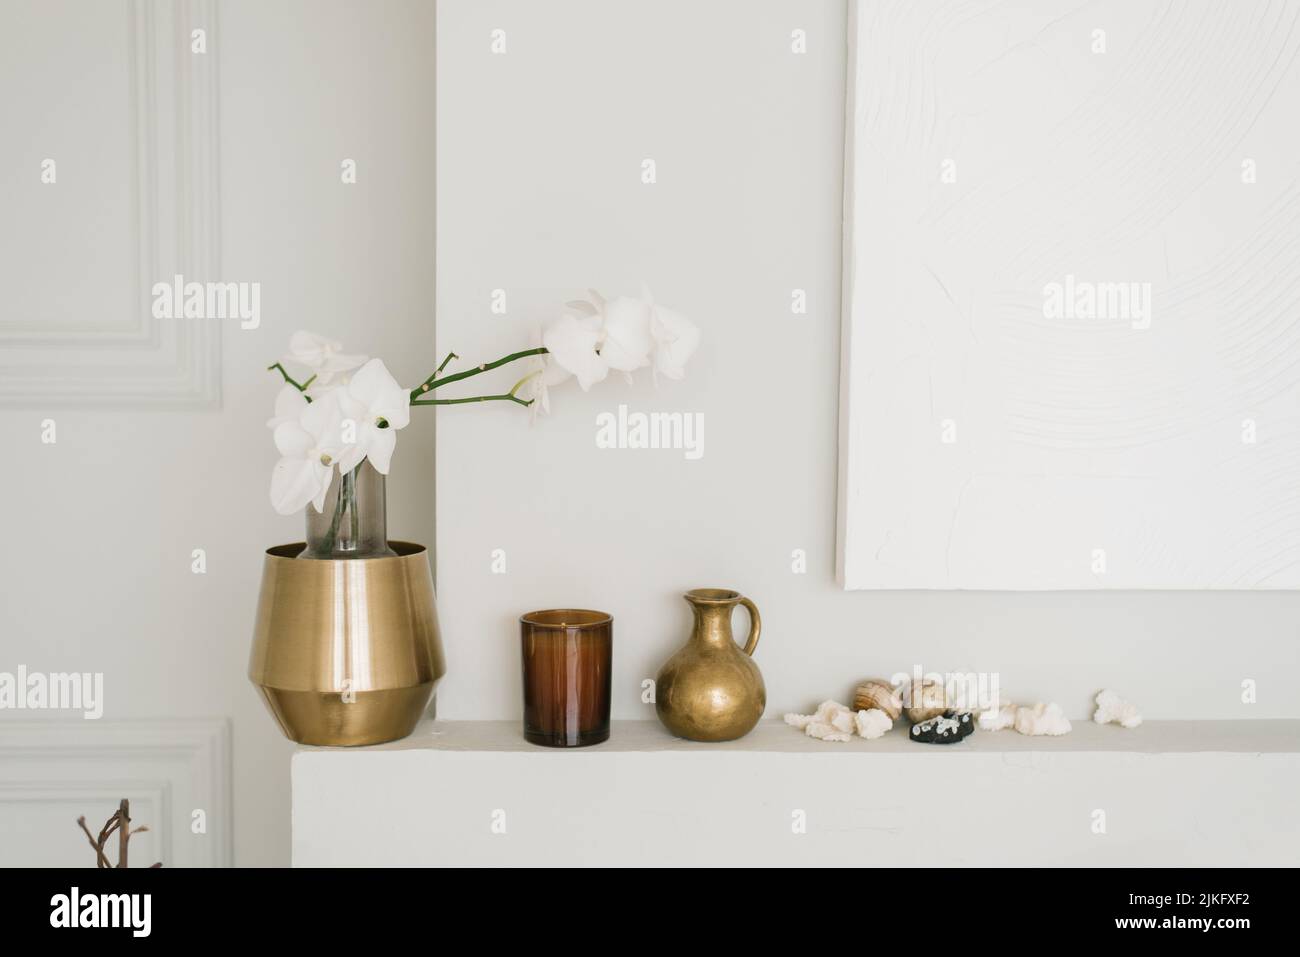 Elegante decoración de la sala de estar en un estilo minimalista. Un jarrón con orquídeas blancas y varios contenedores Foto de stock